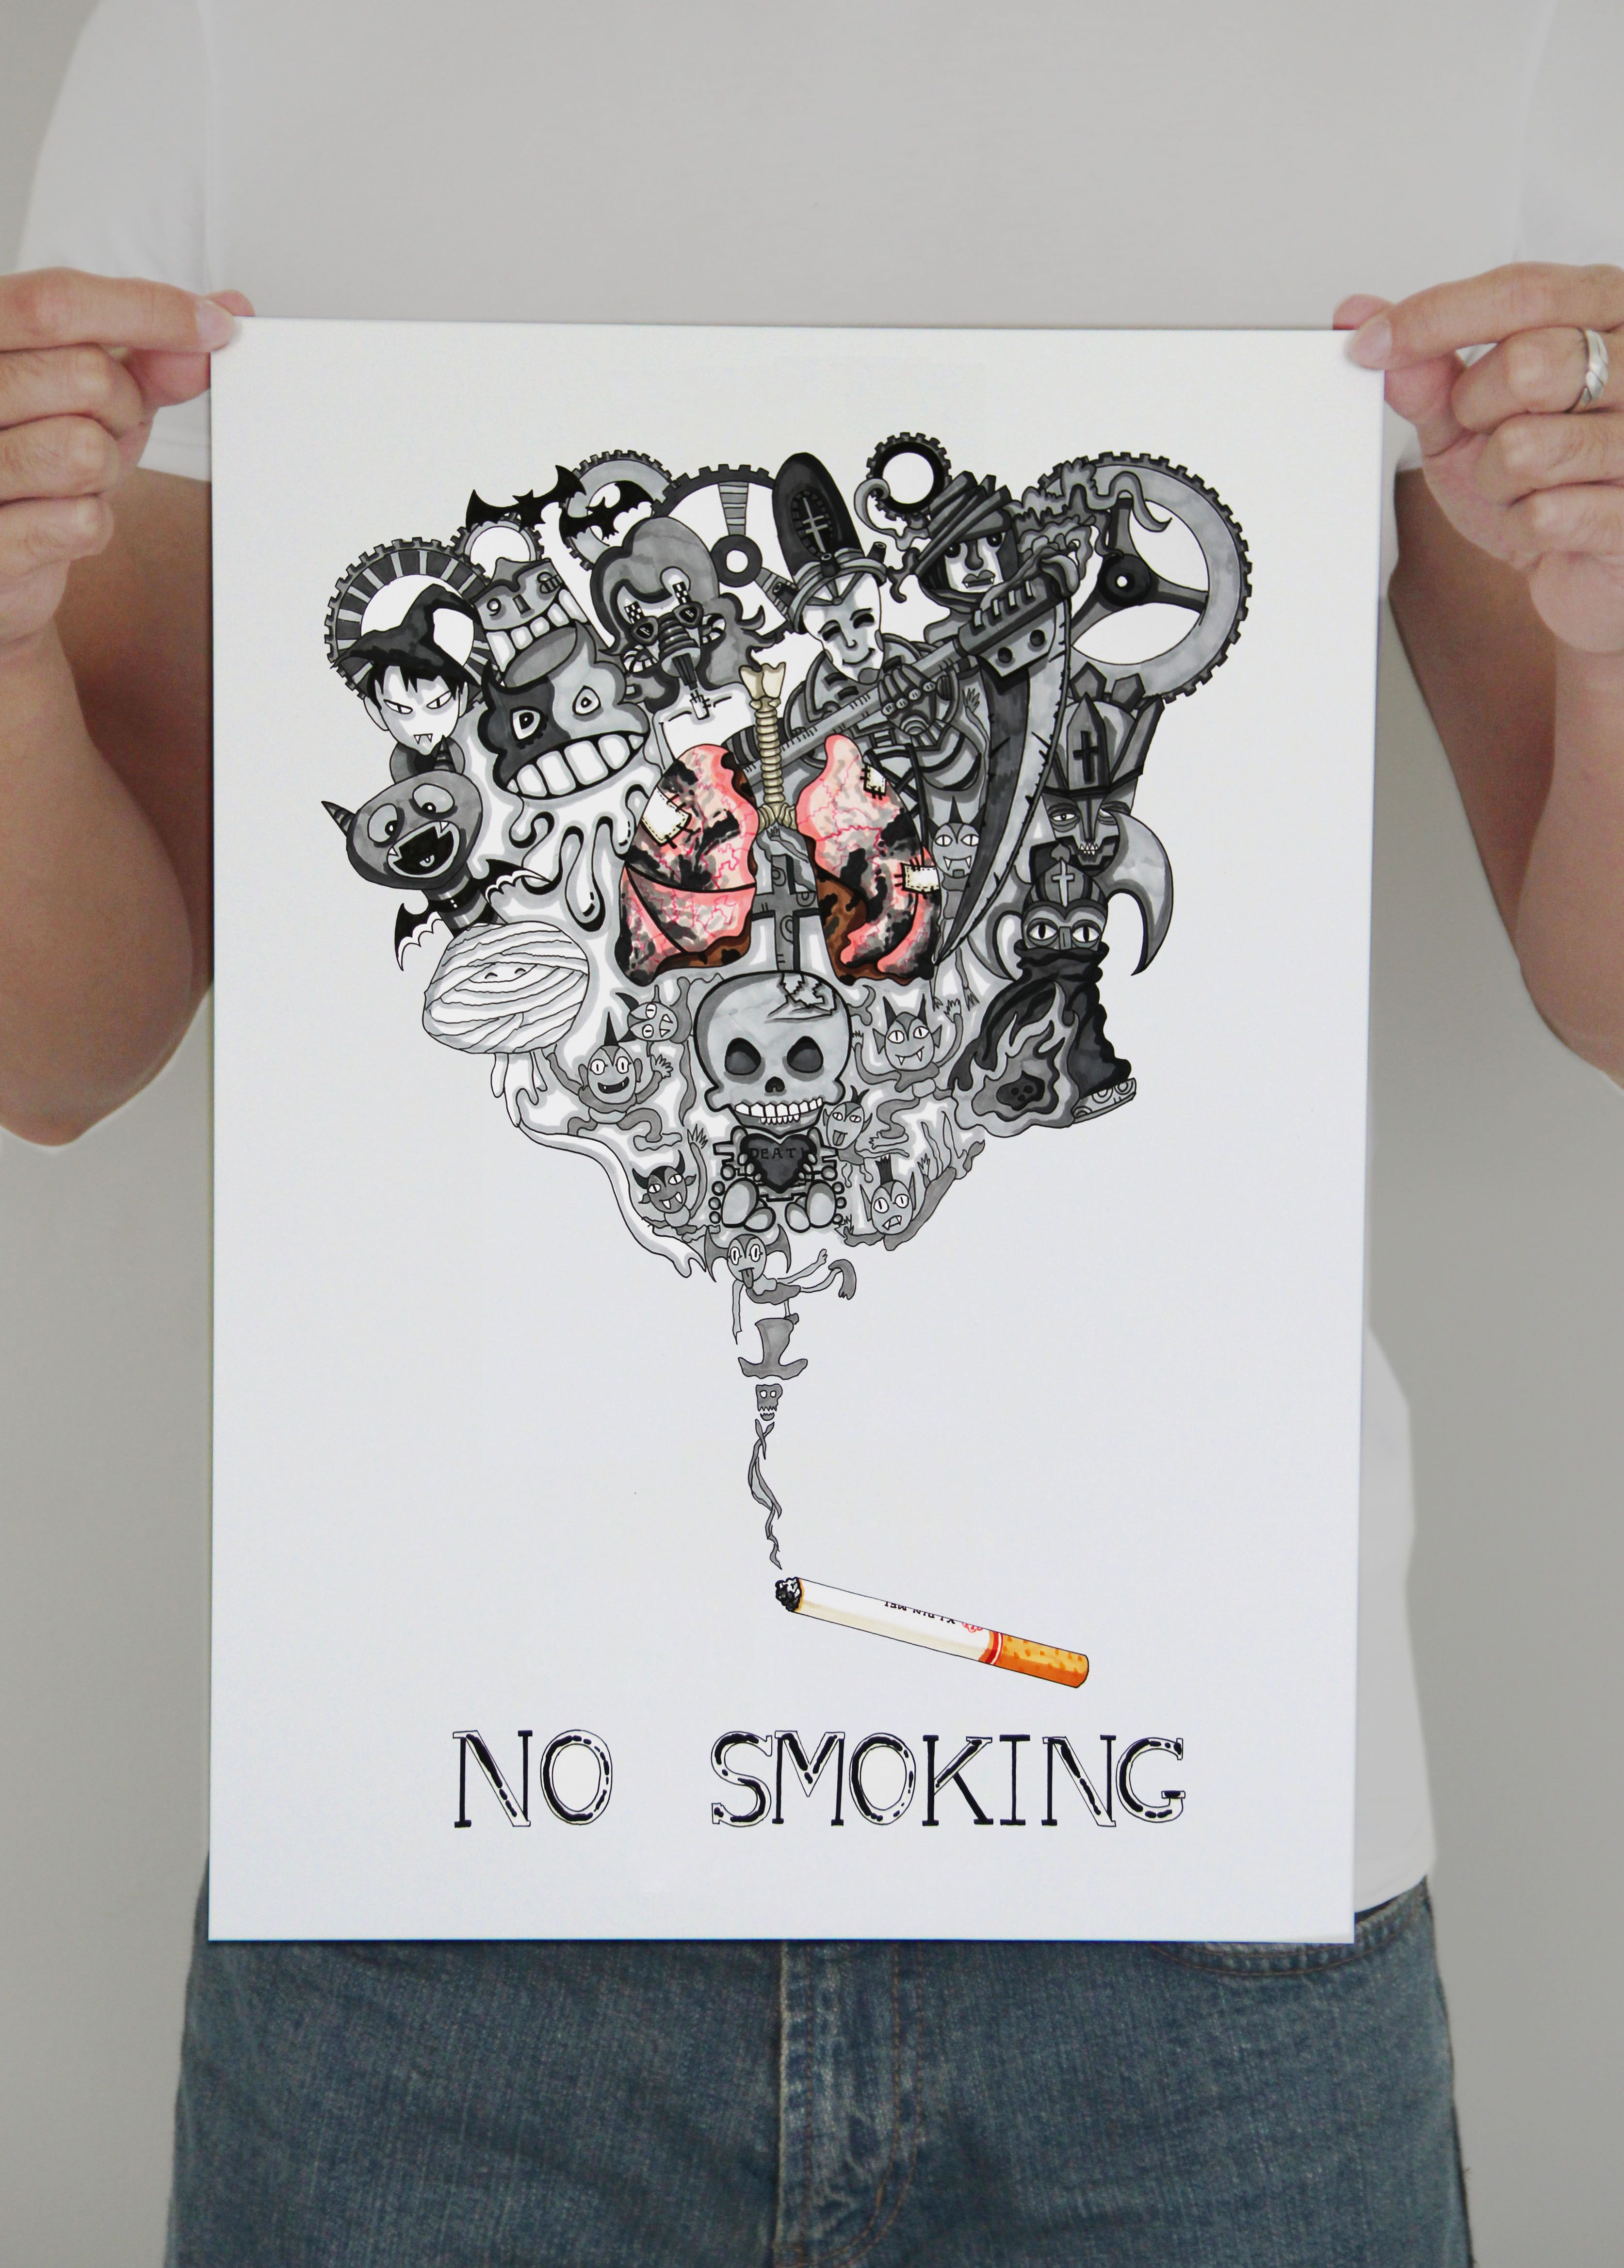  一张禁烟海报,献给大家